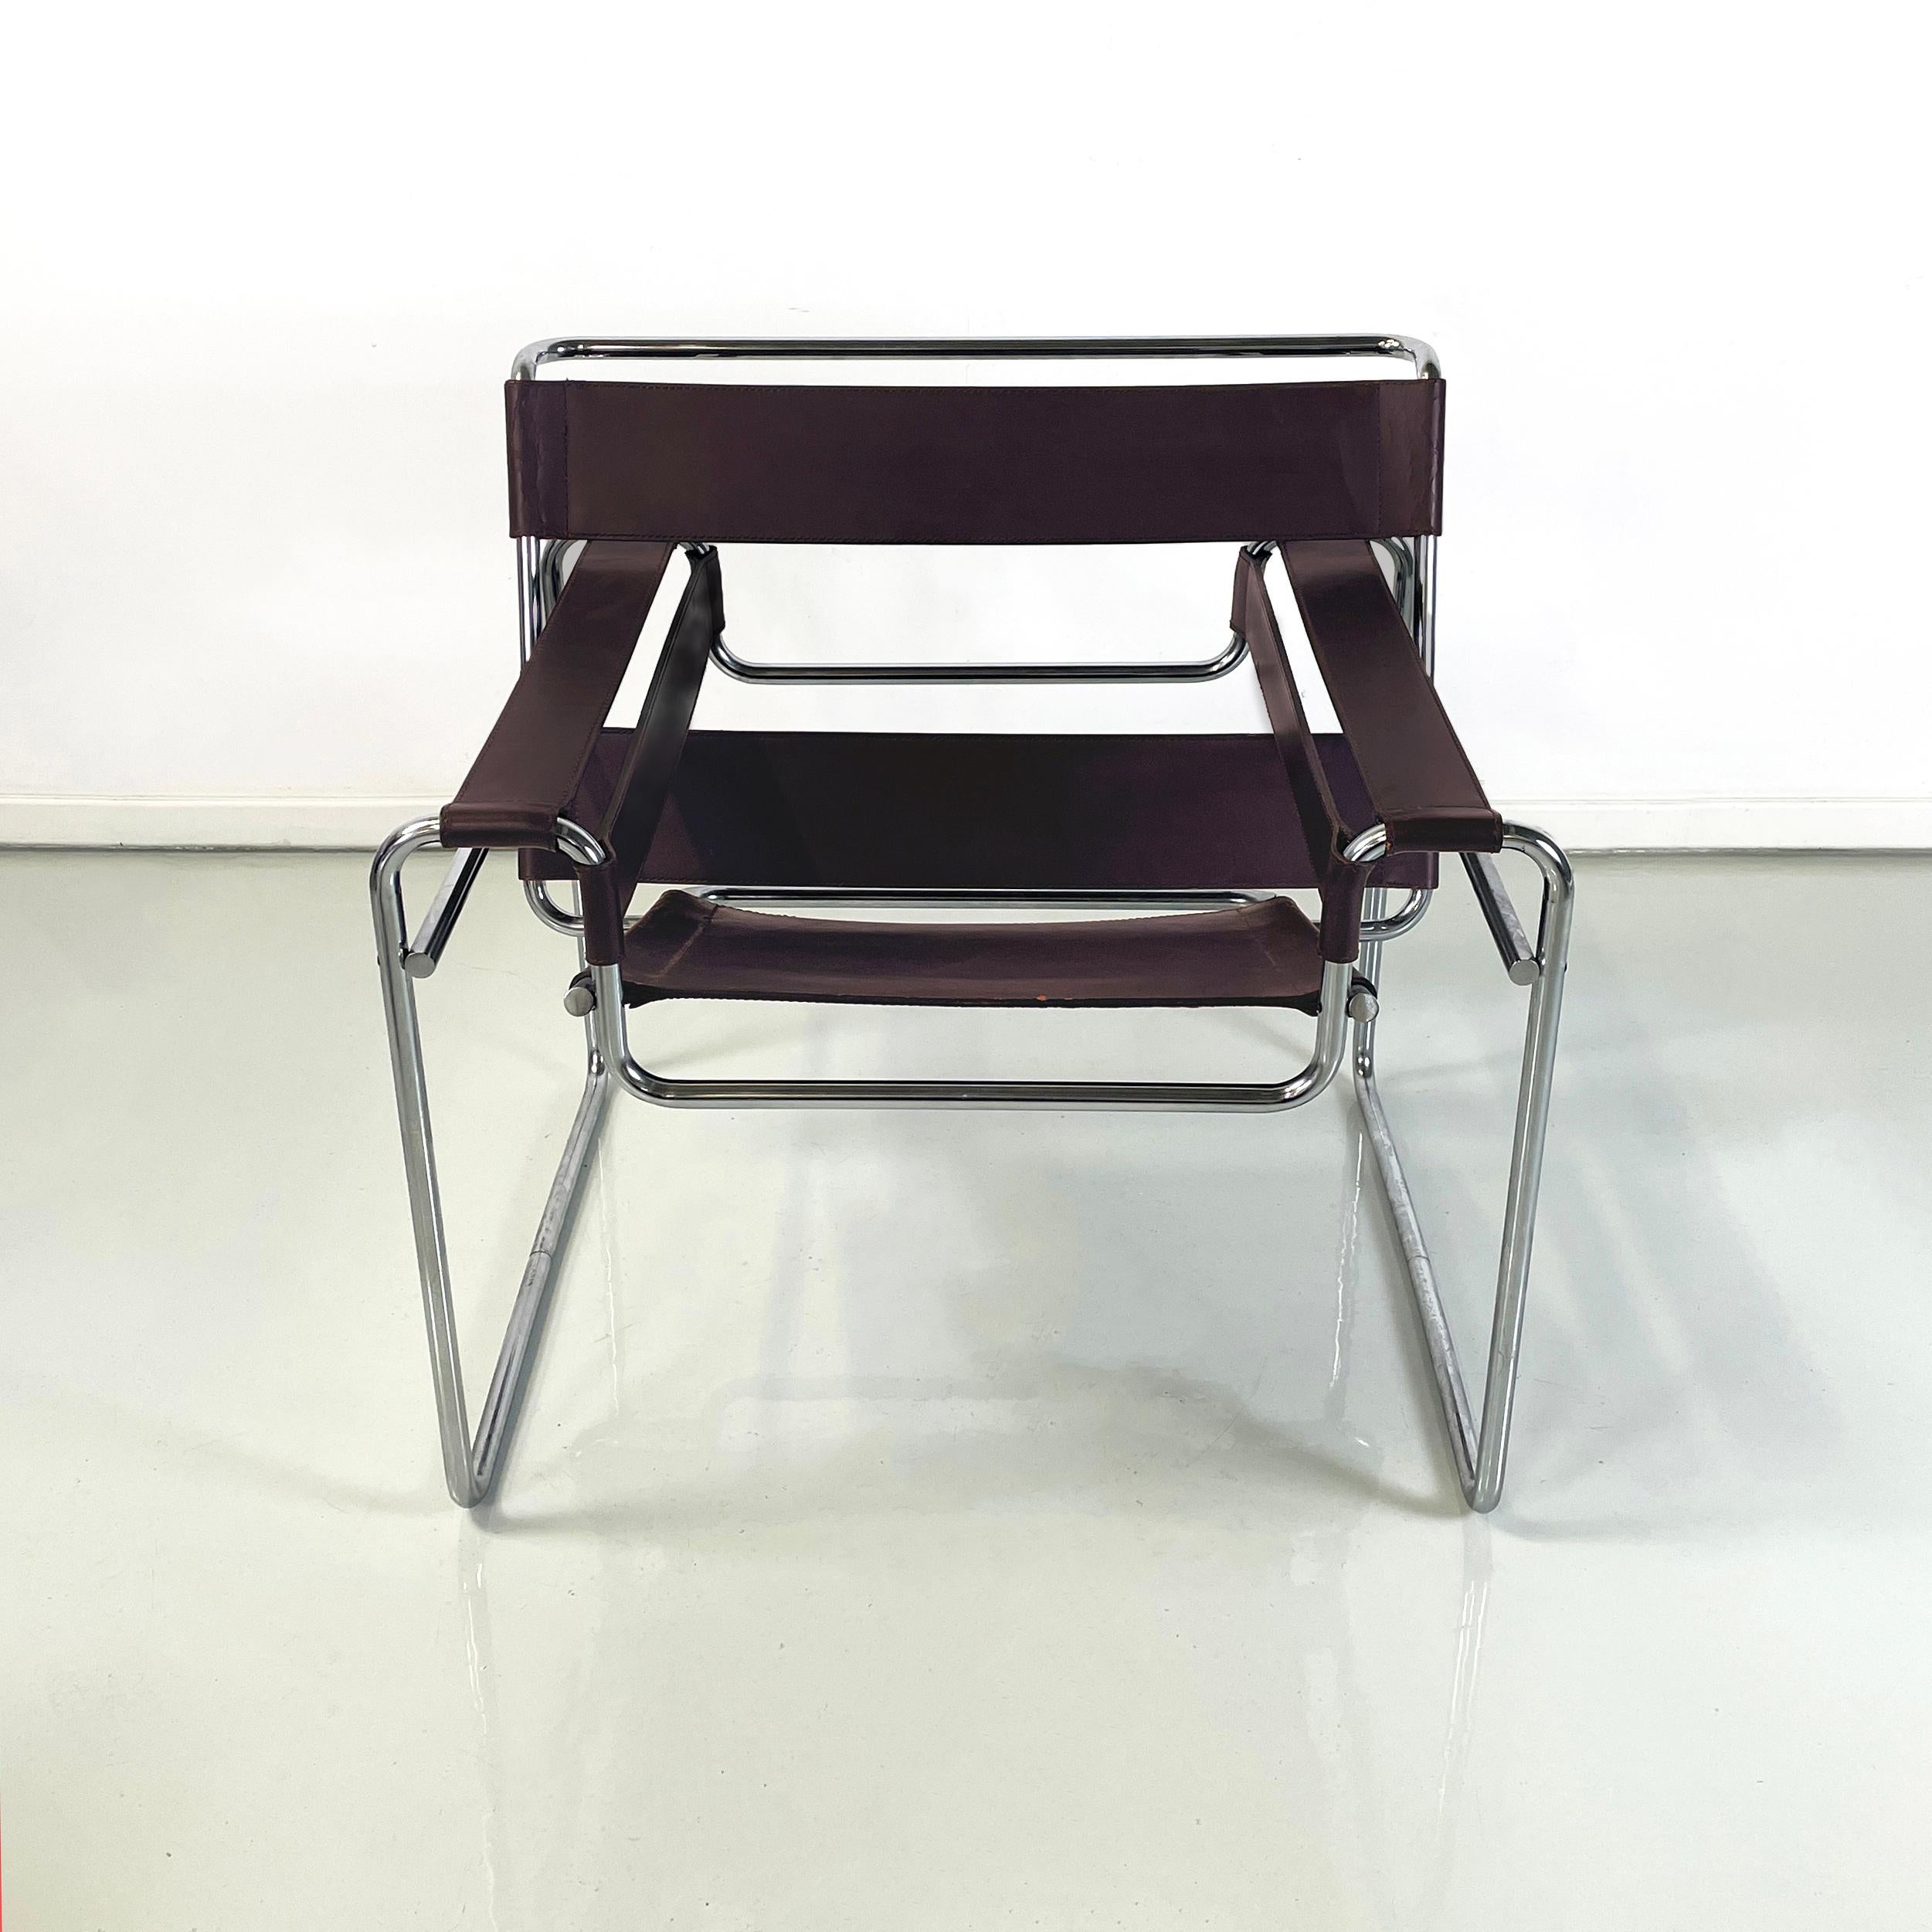 Italienische Moderne Sessel aus braunem Leder und verchromtem Stahl Wassily oder B3 von Marcel Breuer für Gavina, 1970er Jahre
Ikonischer Sessel Mod. Wassily oder B3, mit verchromtem Stahlrohrgestell. Der Sitz, die Armlehnen und die Rückenlehne